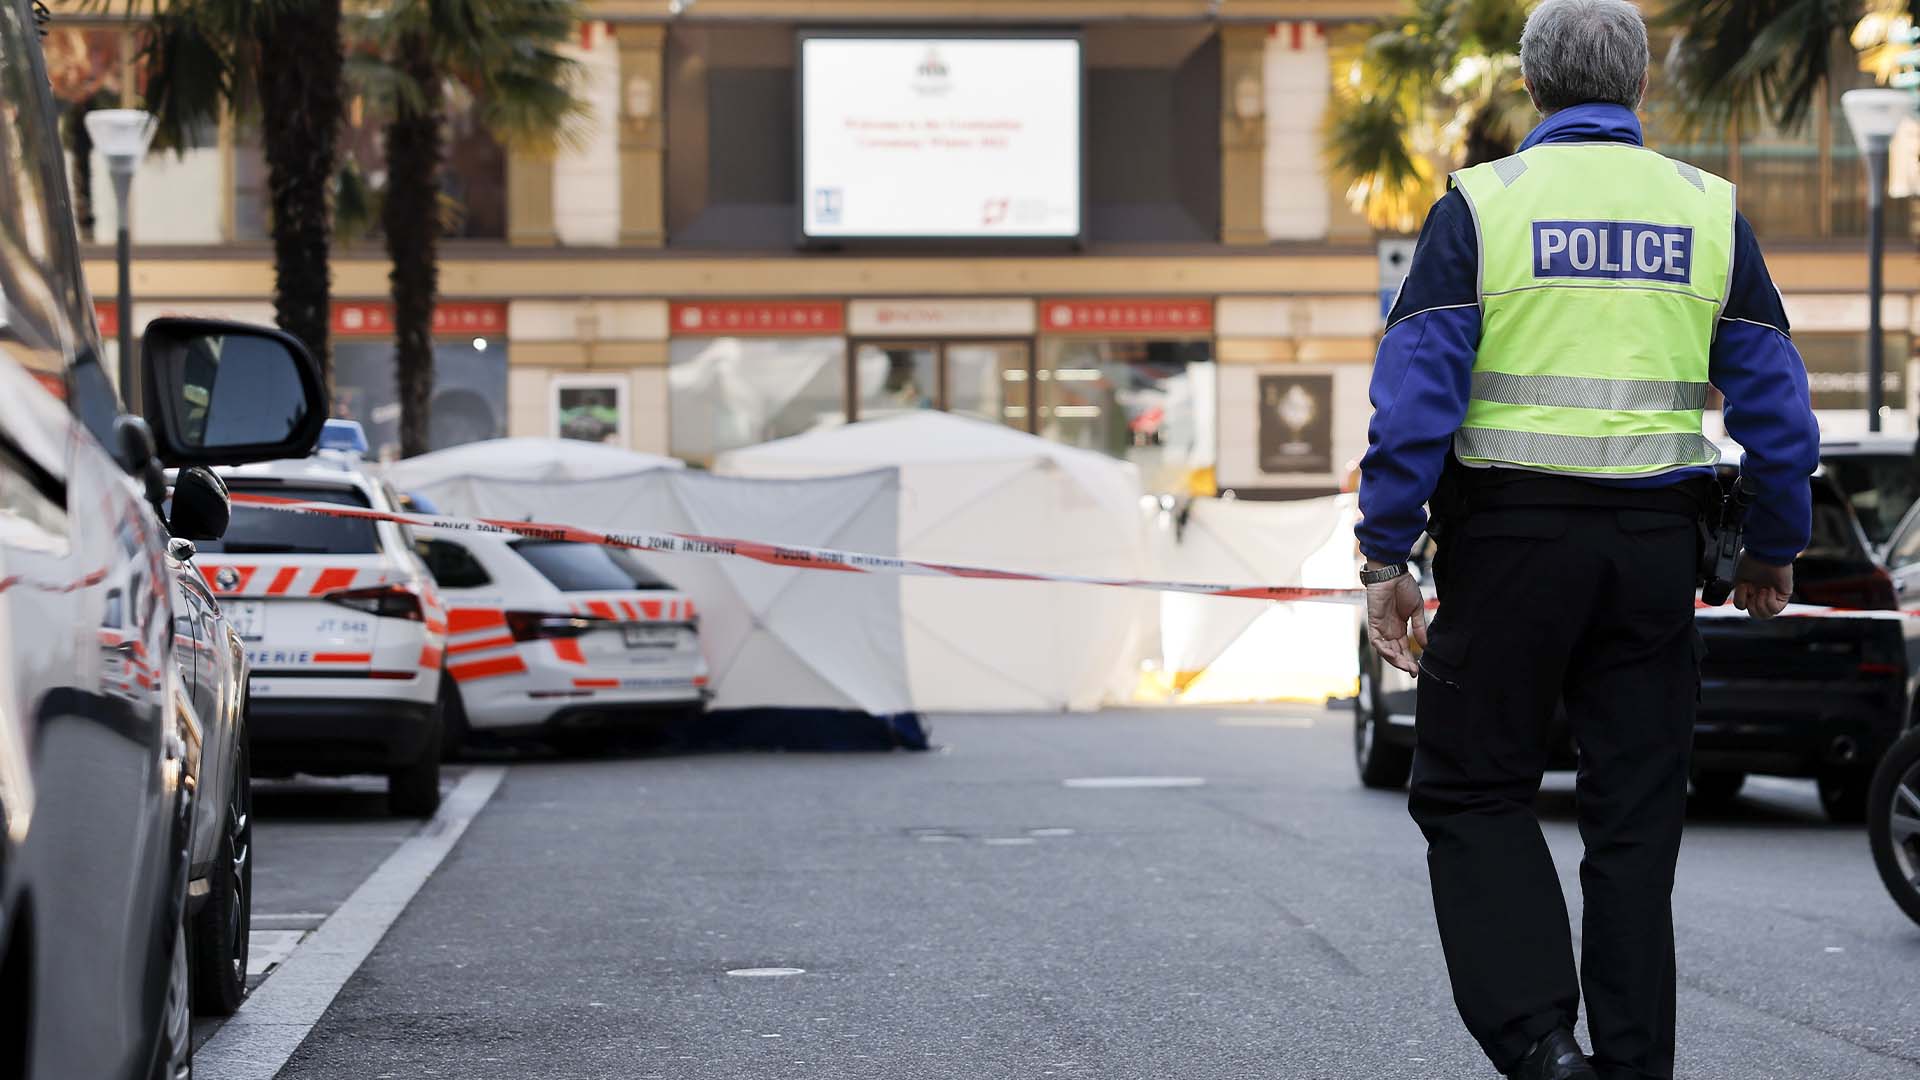 Quatre personnes ont été retrouvées mortes au pied d'un immeuble à Montreux, une cinquième personne hospitalisée dans un état grave.